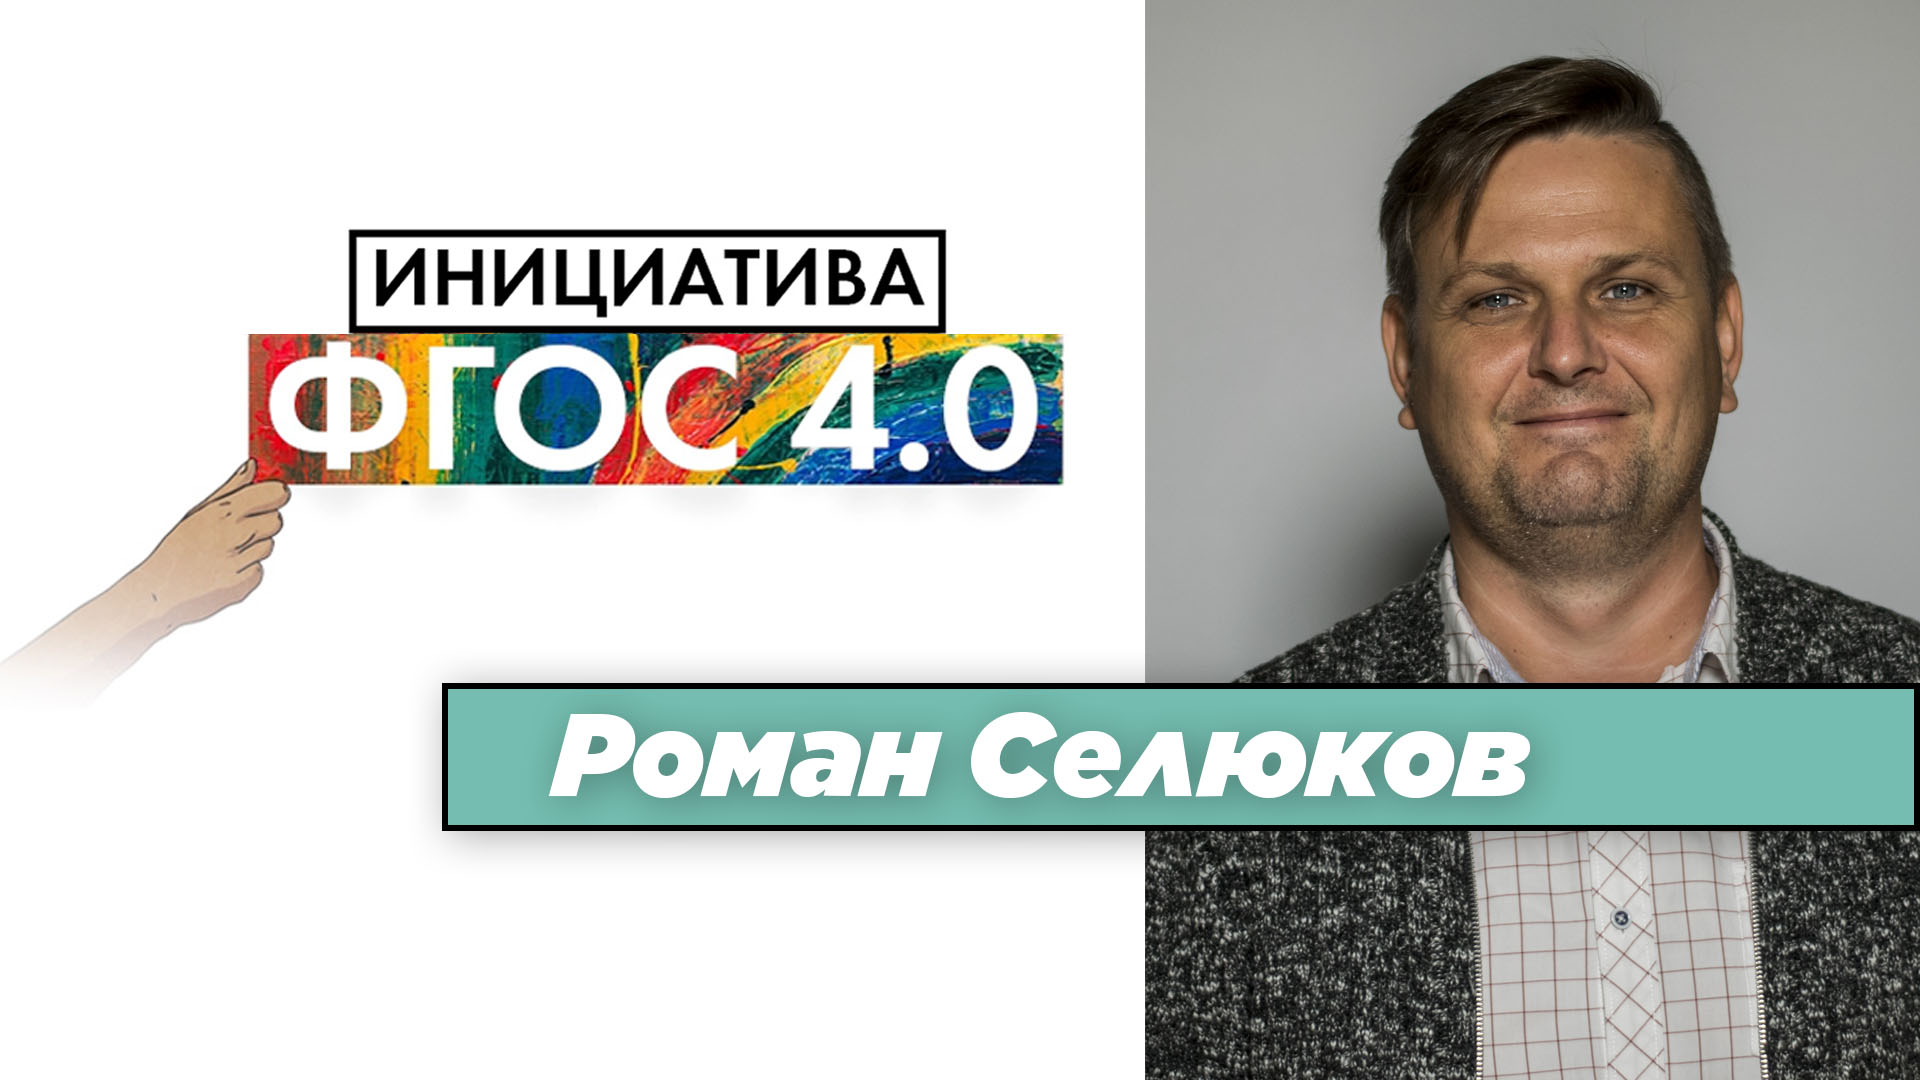 Роман Селюков: «Инициатива ФГОС 4.0». Результаты